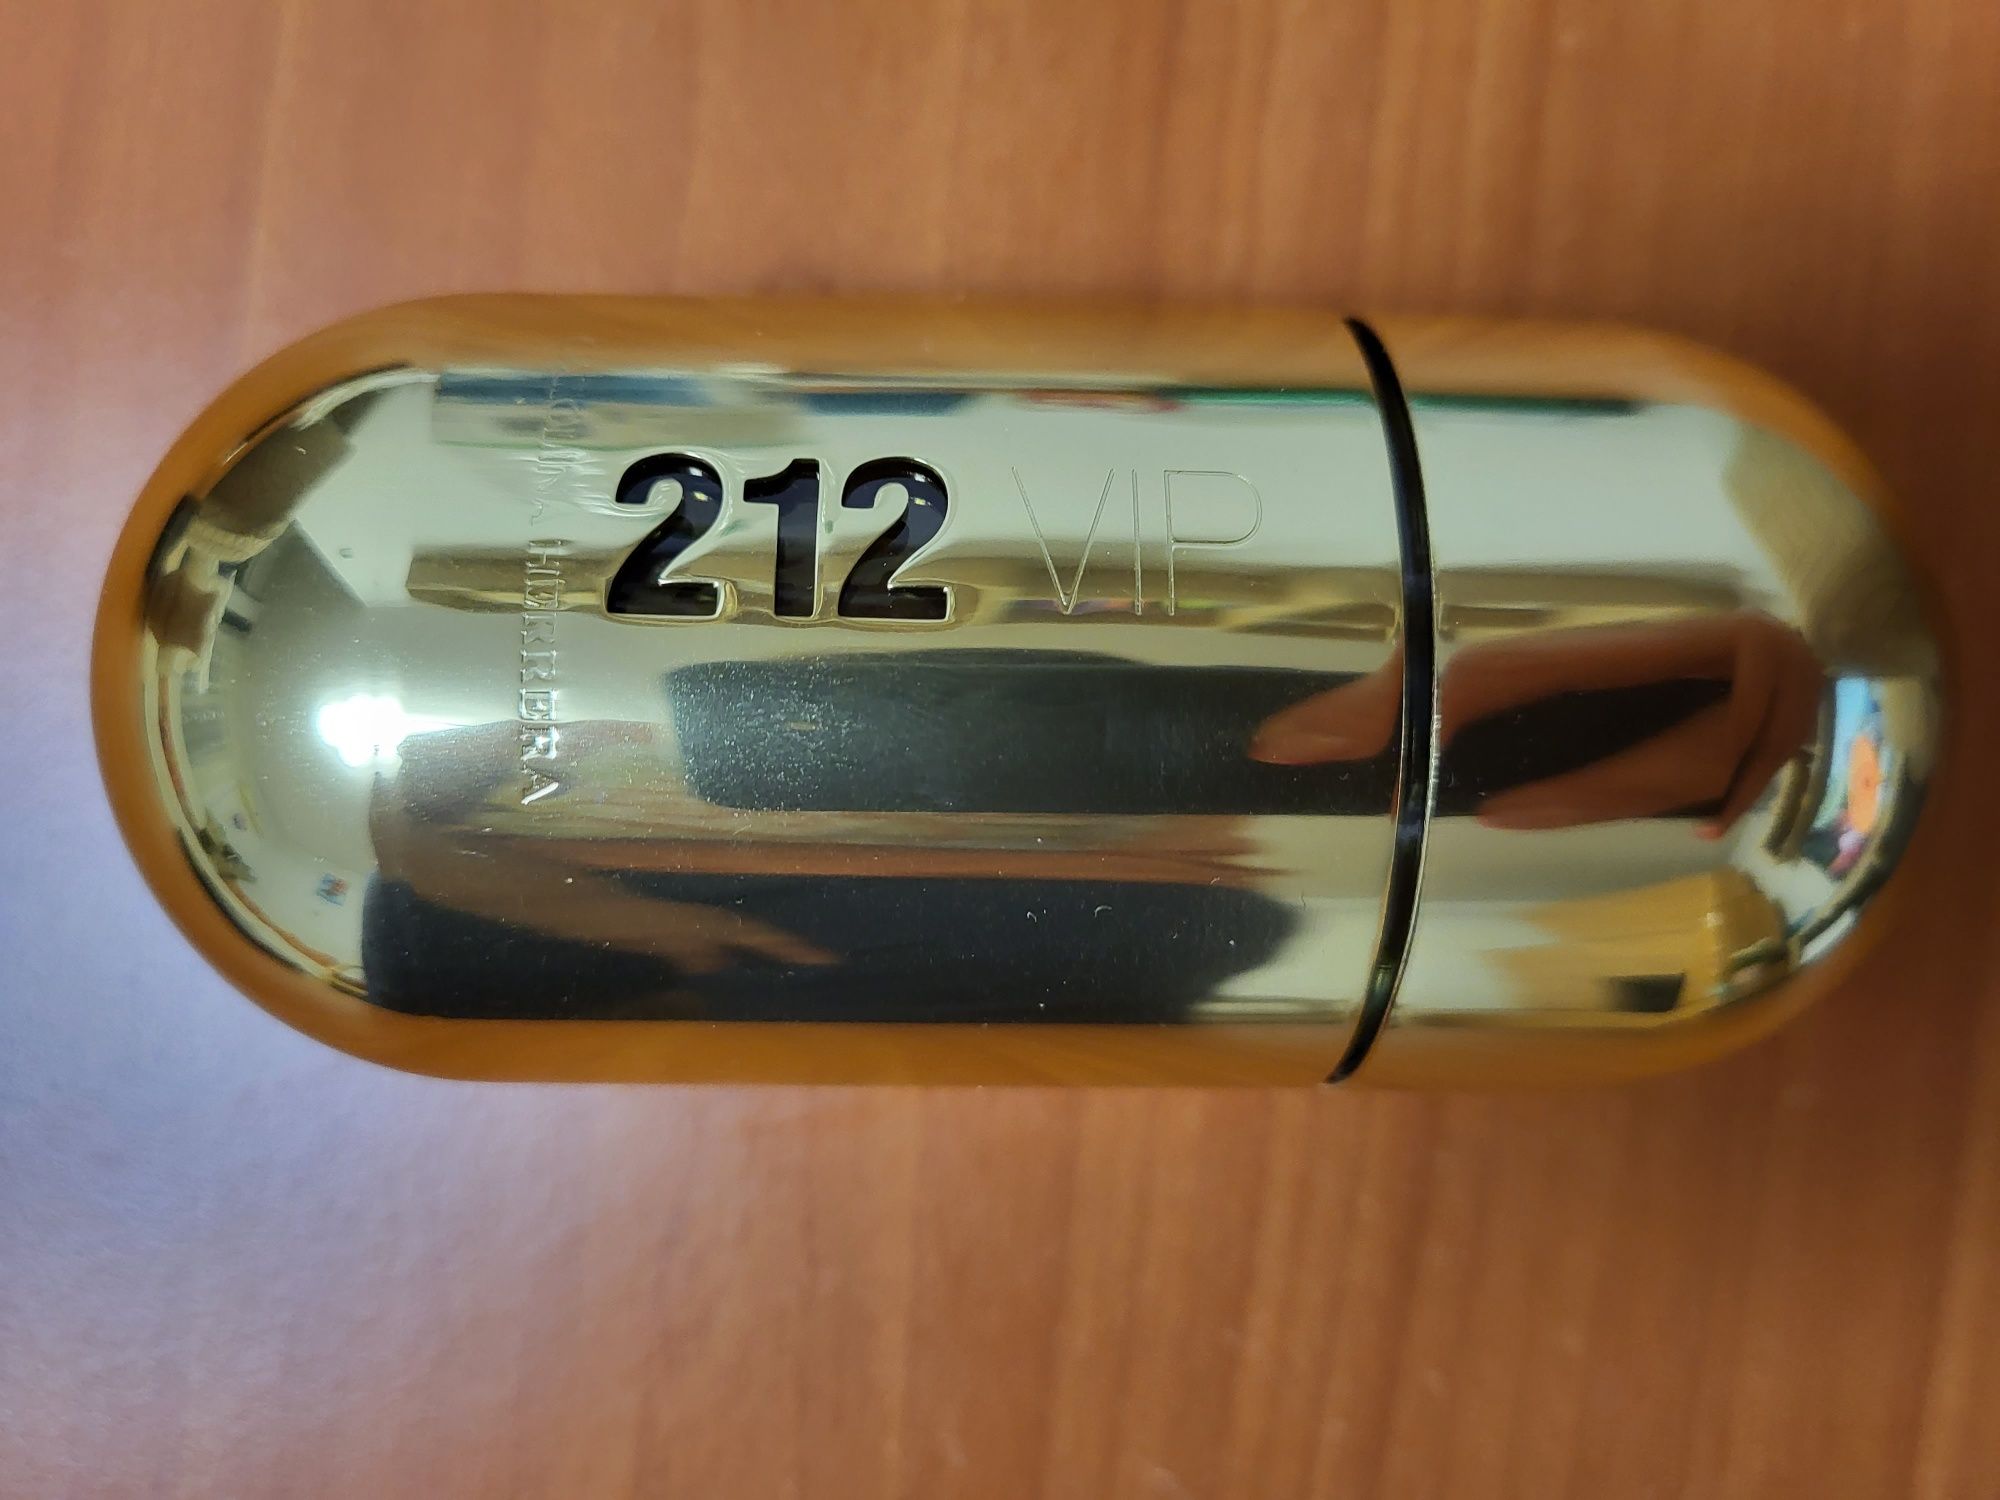 Parfum 212 VIP, Carolina Herrera, 50 ml